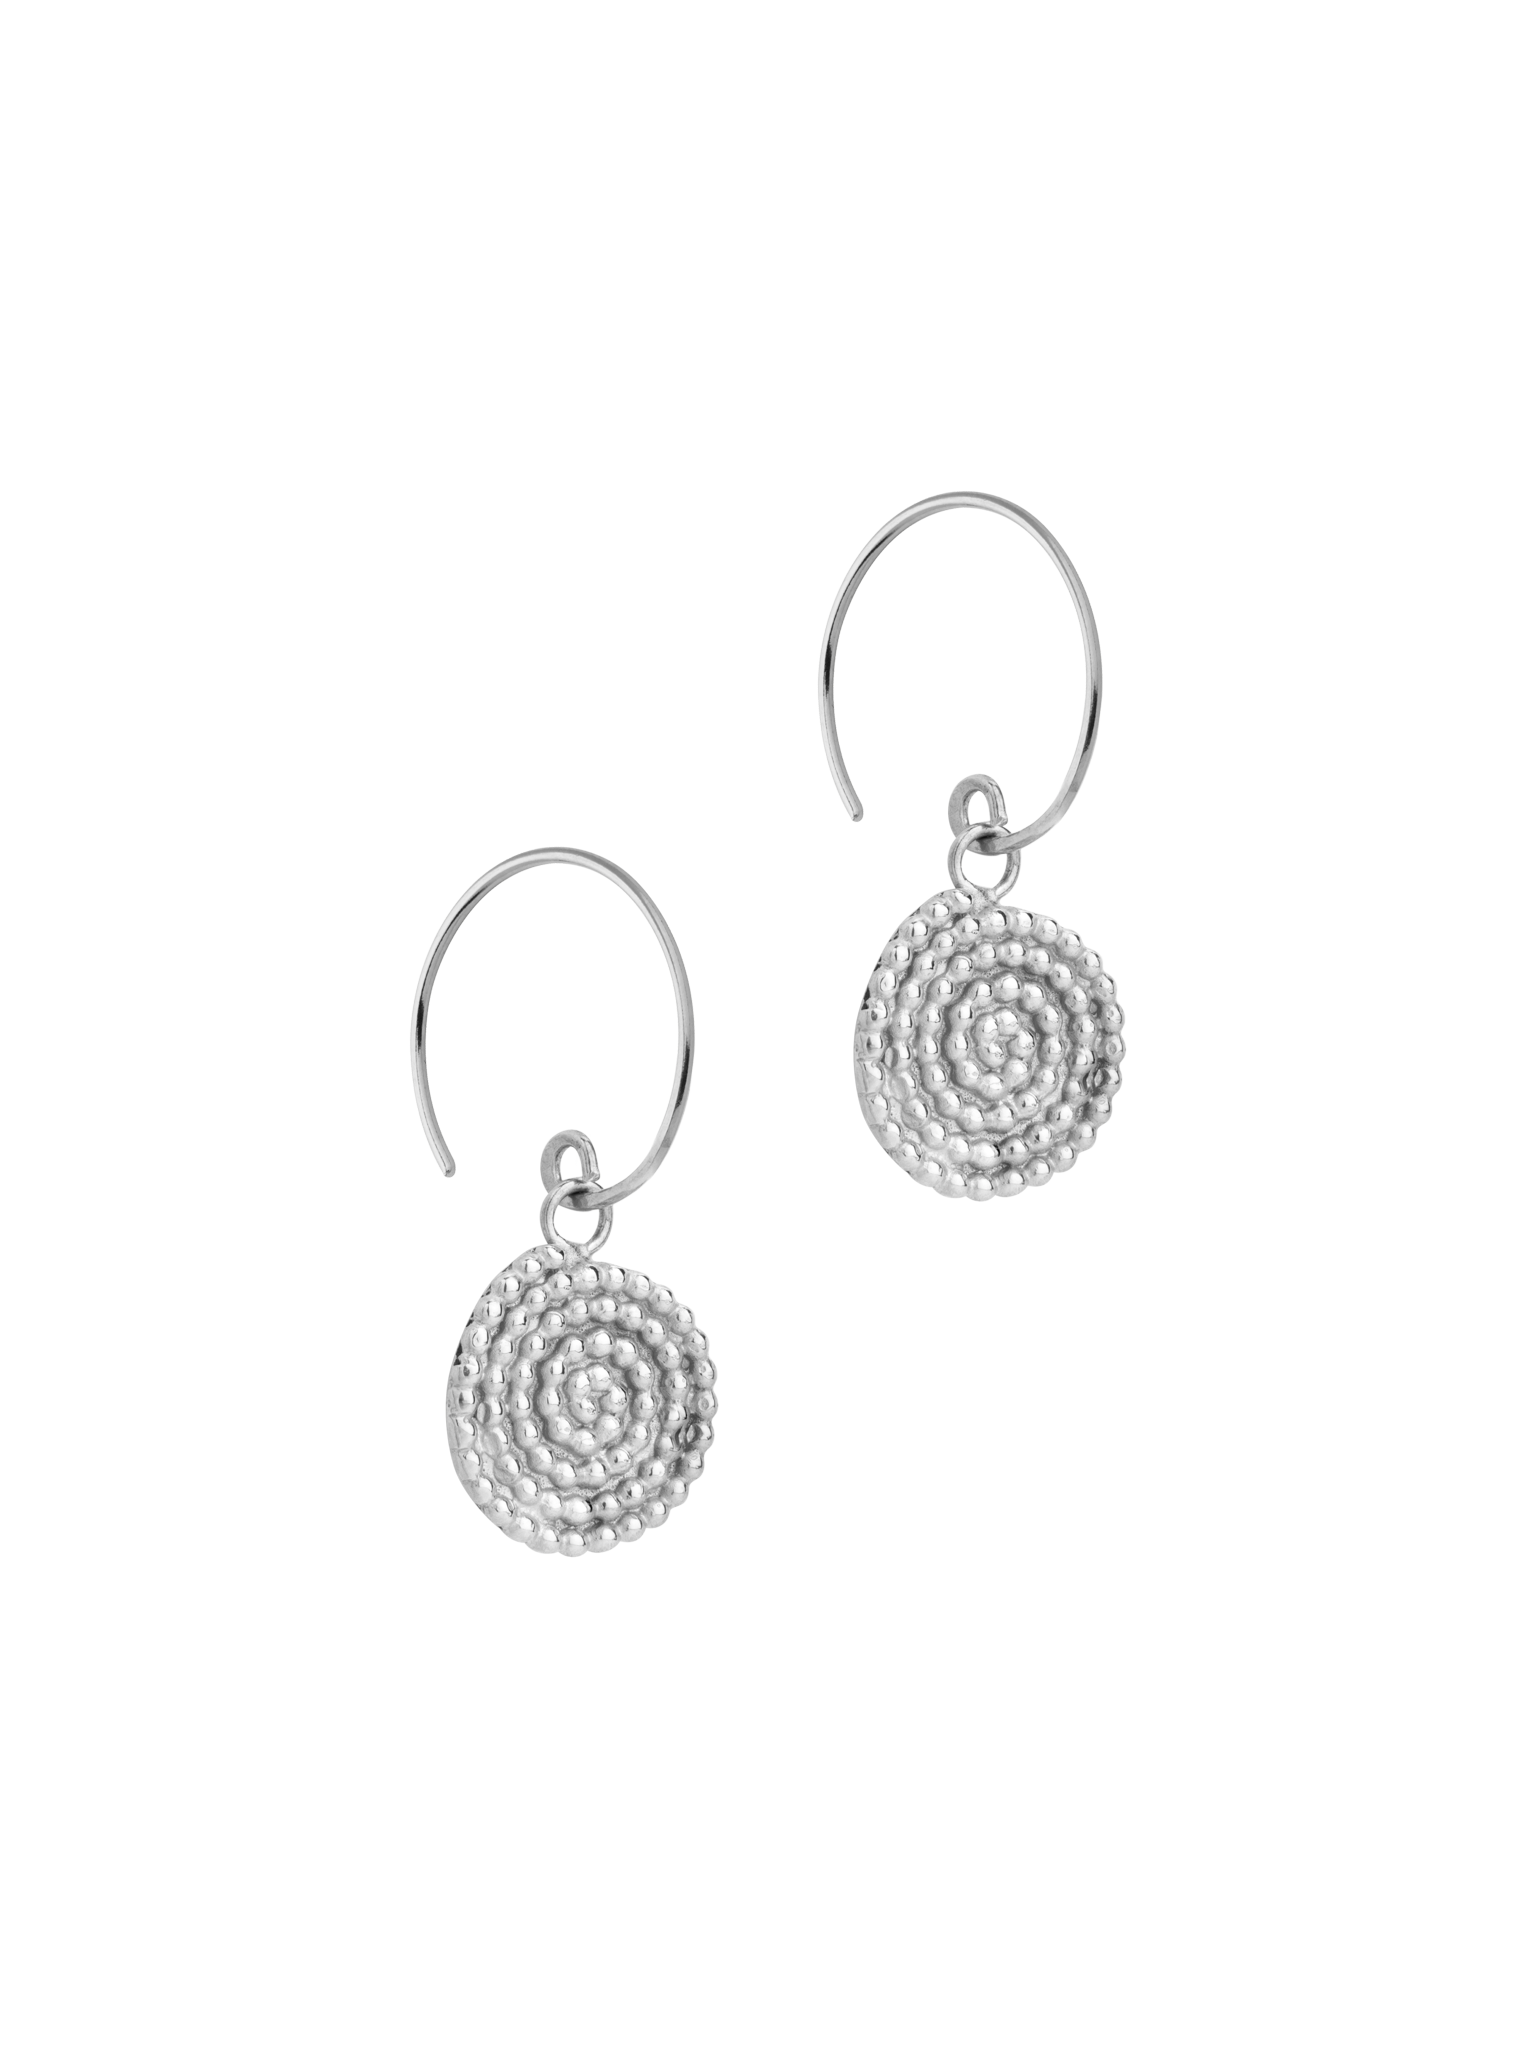 Granulated spiral earrings